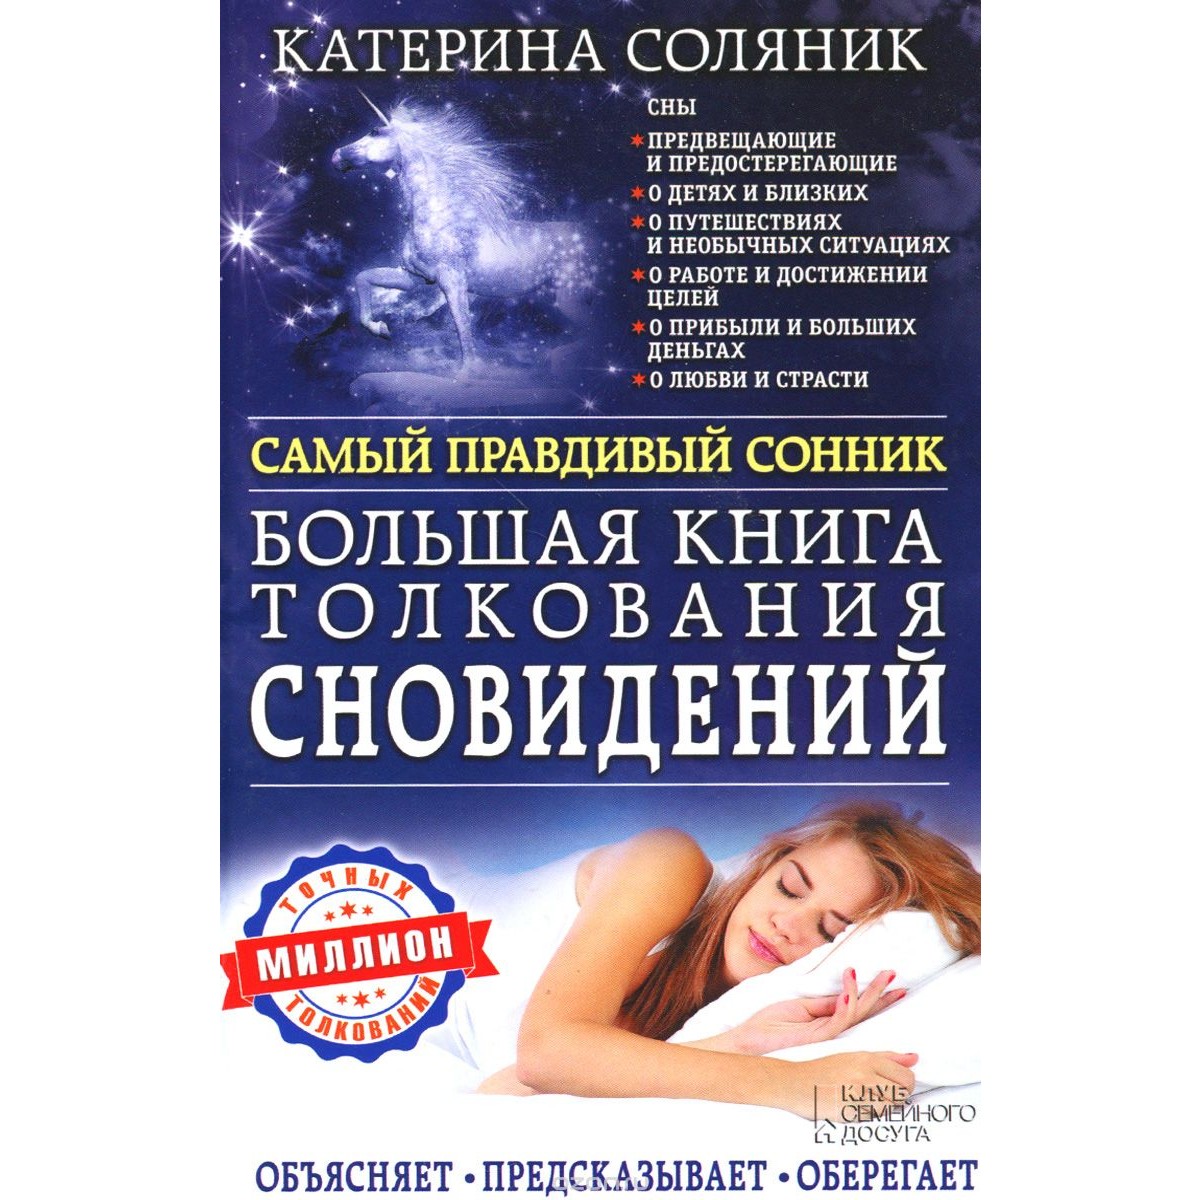 Катерина Соляник большая книга толкования сновидений